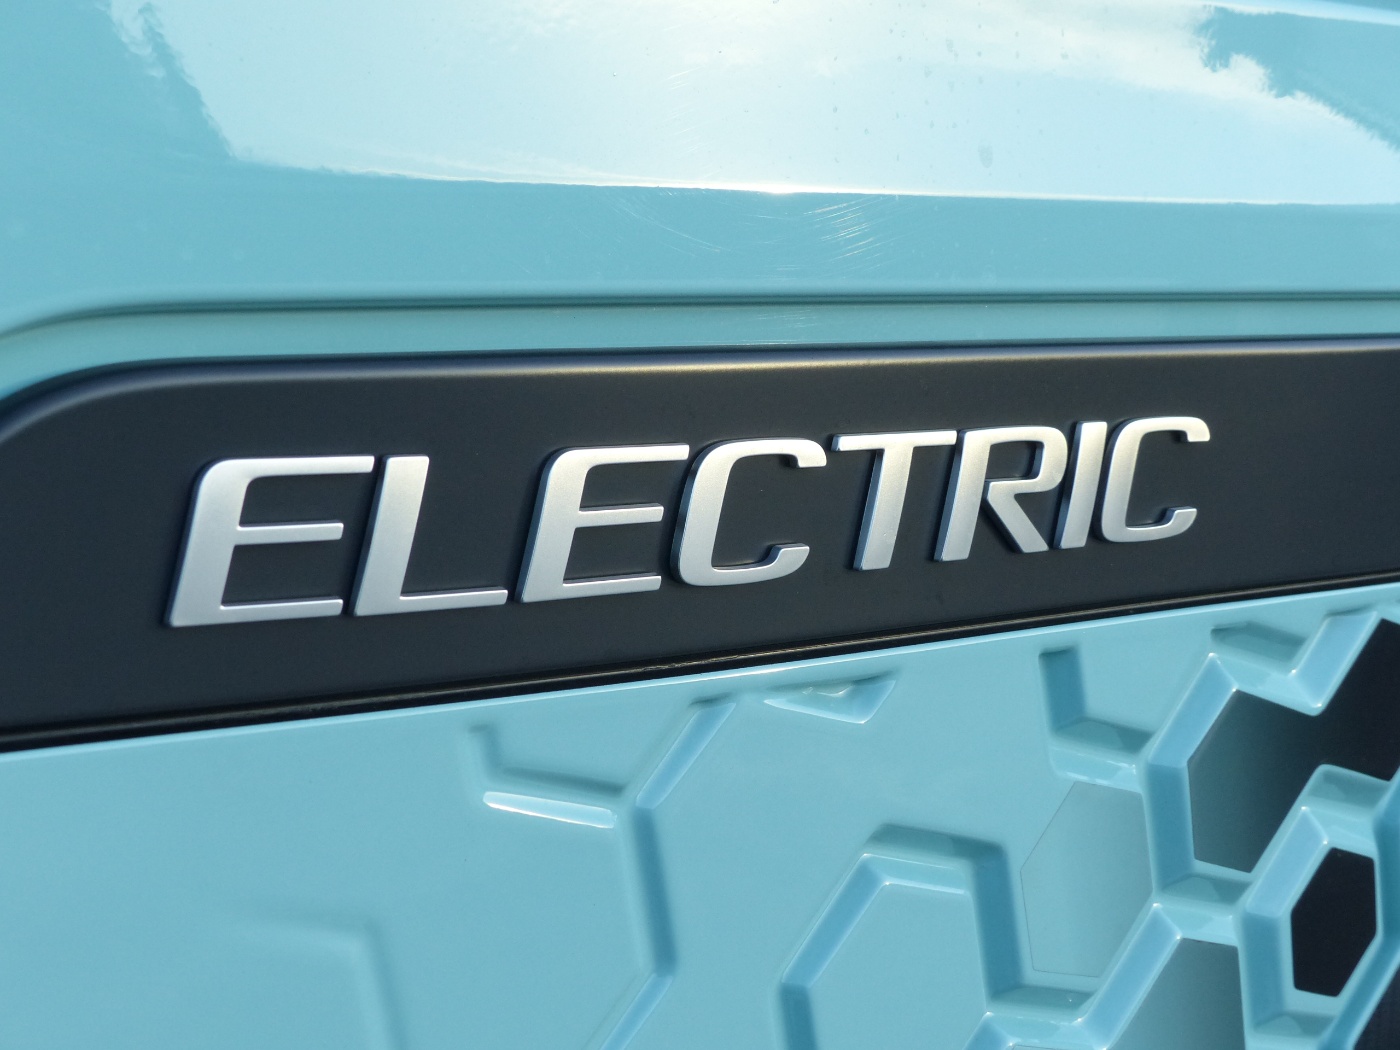 Nahaufnahme eines Autos mit dem Schriftzug "Electric"